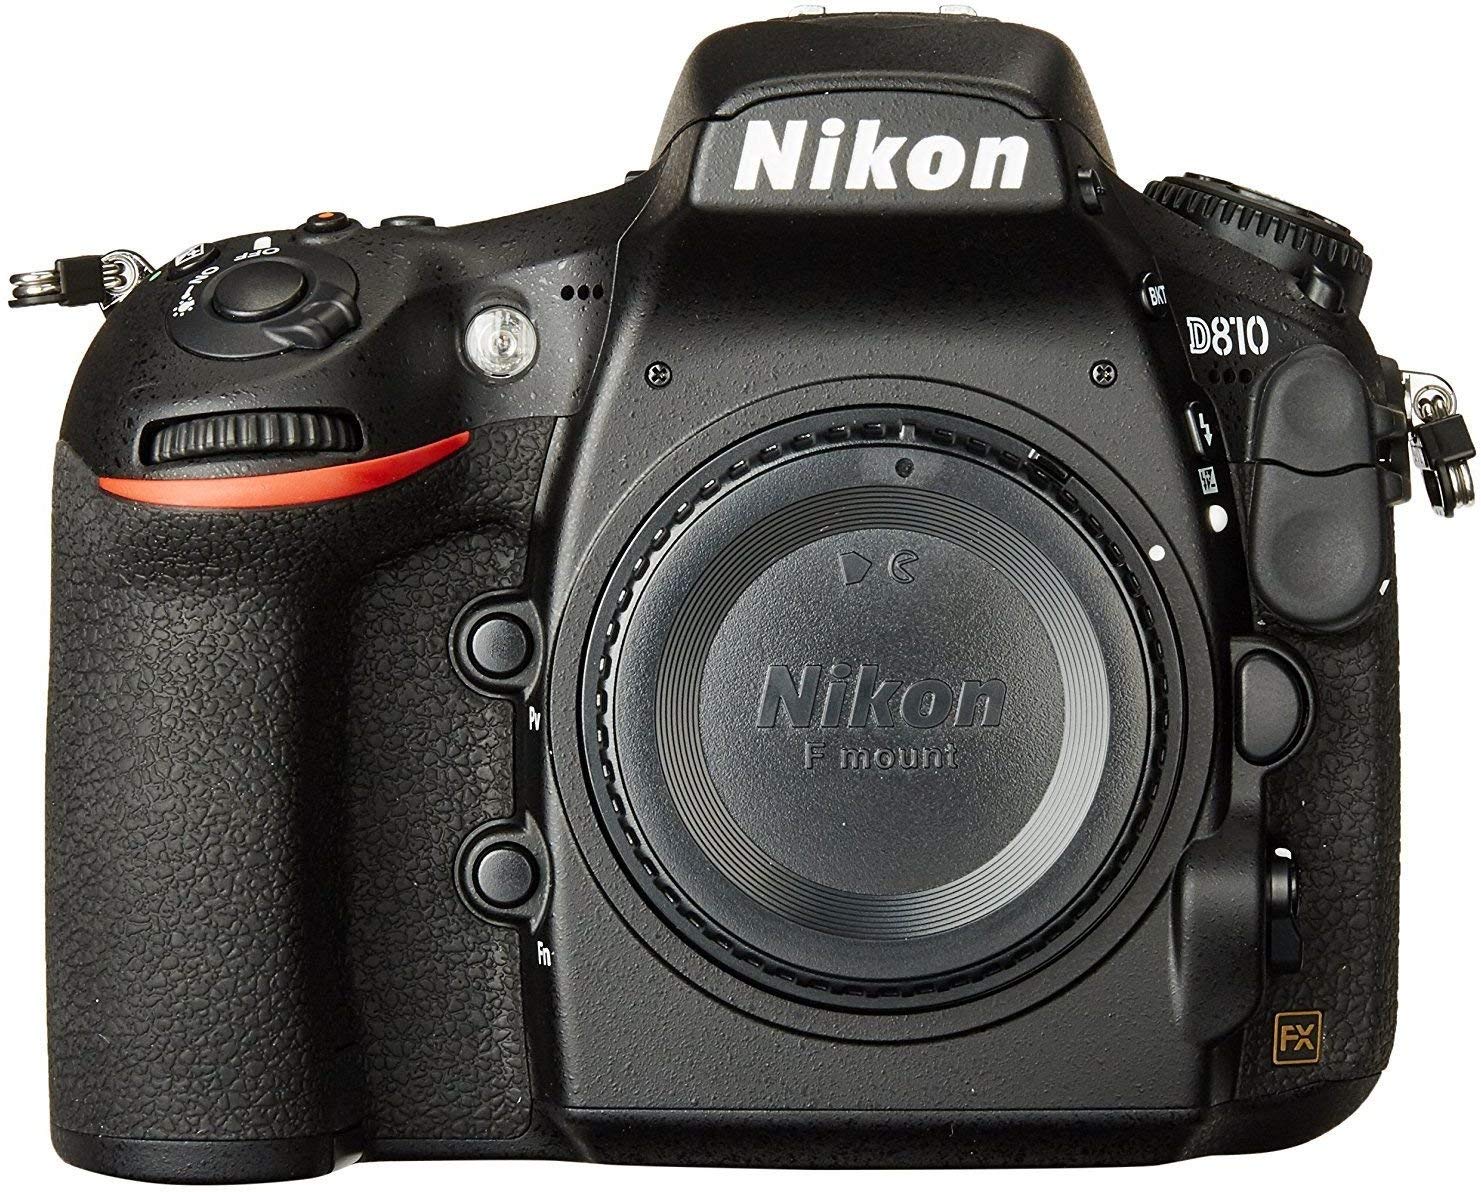 NIKO9 Corpo de câmera digital SLR de formato Nikon D810 FX